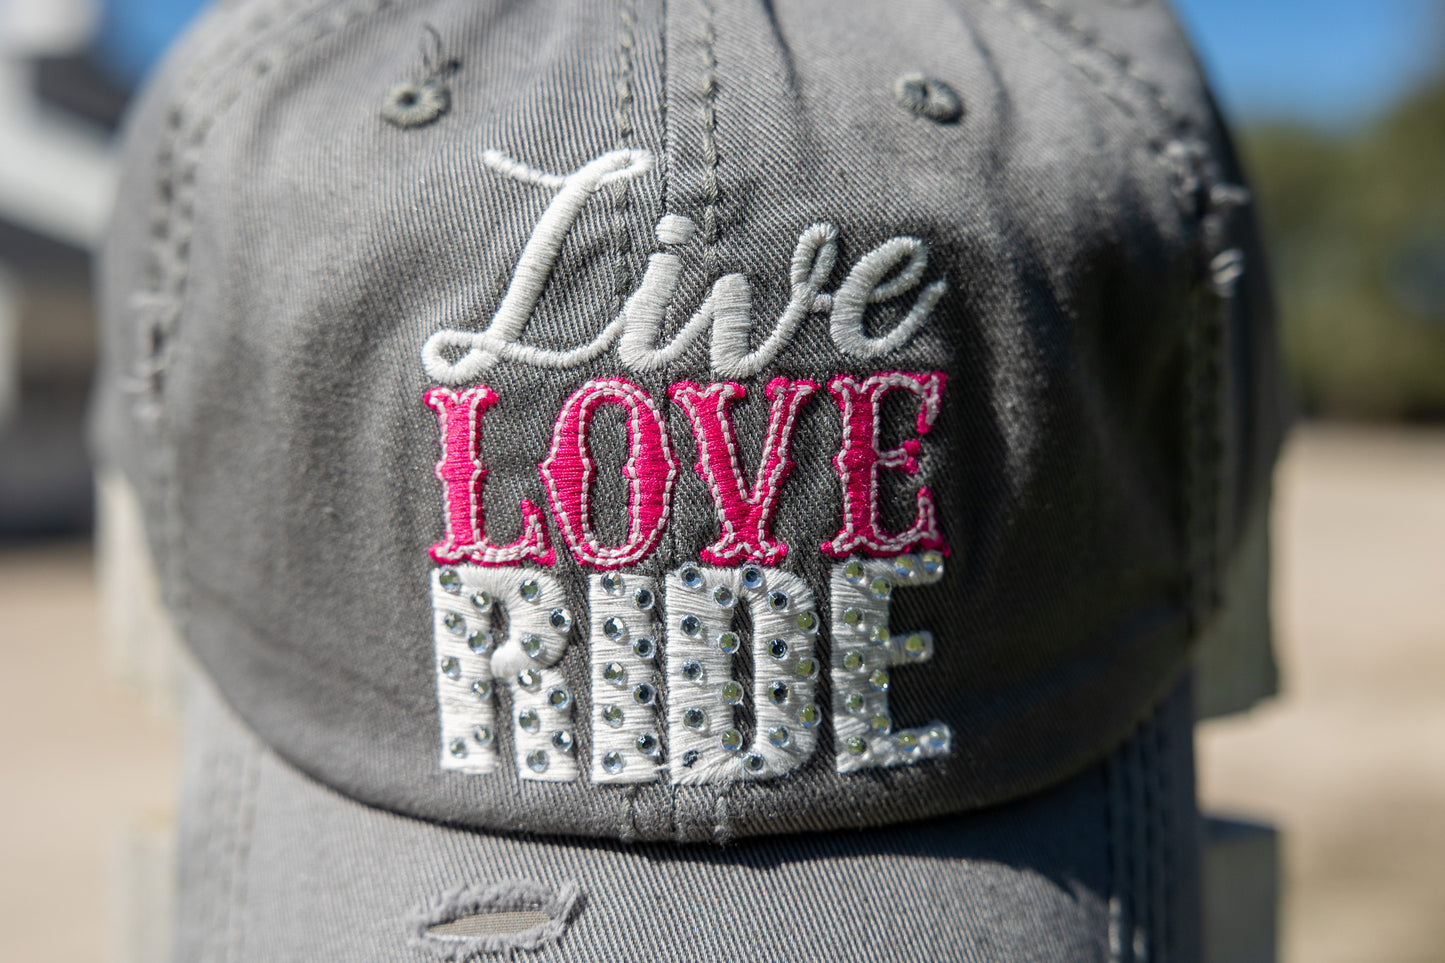 live love ride